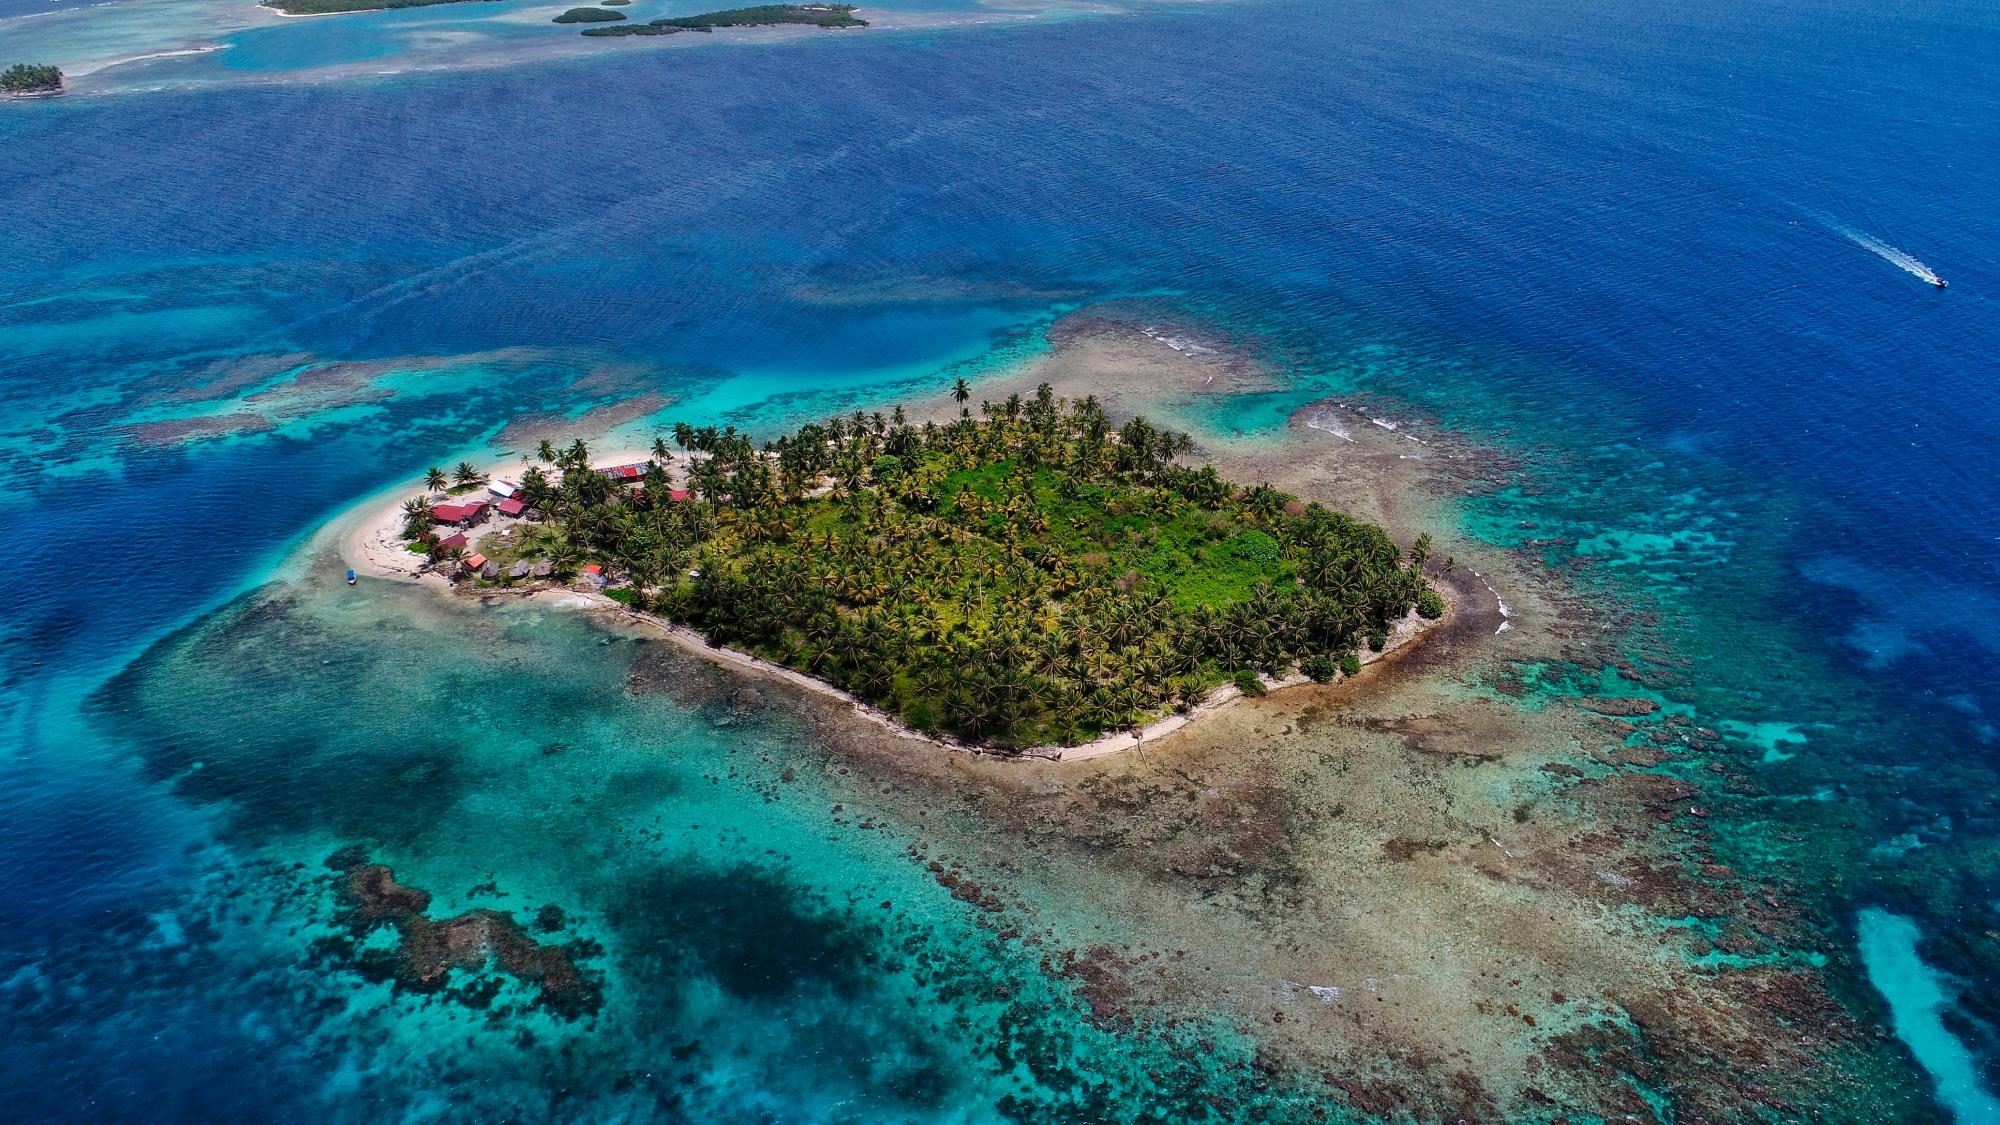 Islas Palaos, (Micronesia, Oceanía) Alberga unos de los más espectaculares arrecifes de coral. Un archipiélago de origen volcánico.